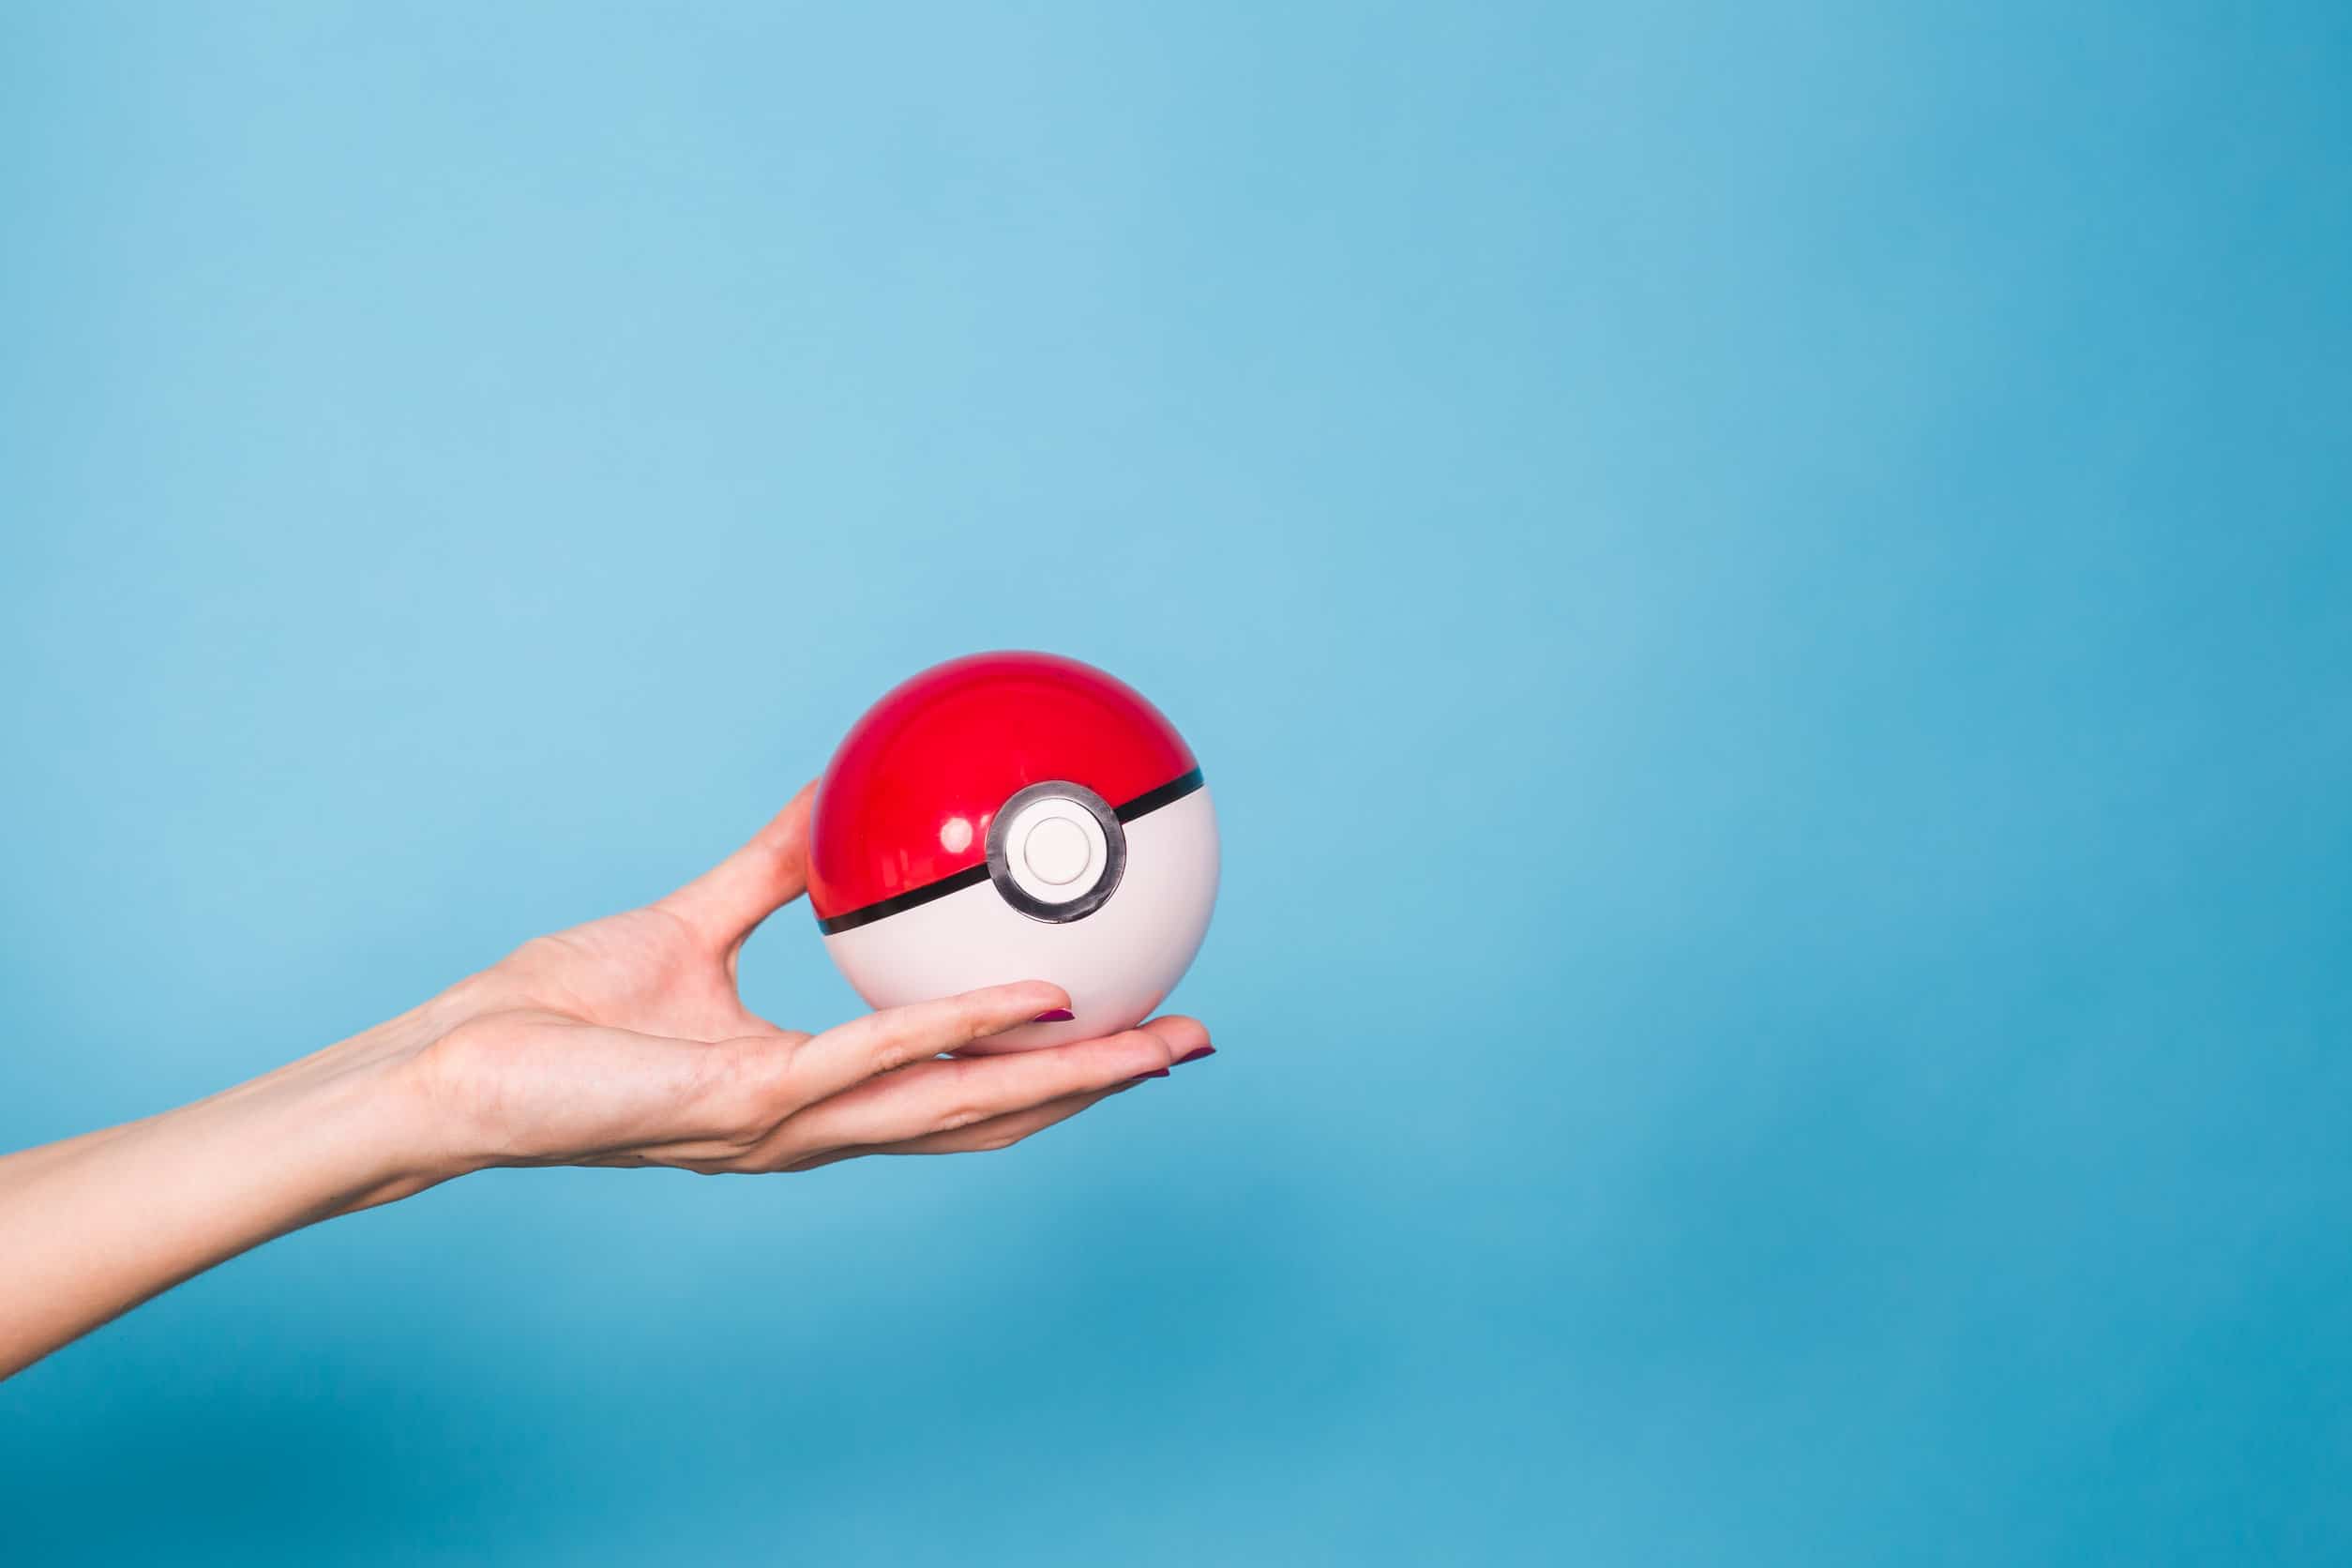 En hand som håller en röd och vit pokémon-pokeboll mot en blå bakgrund